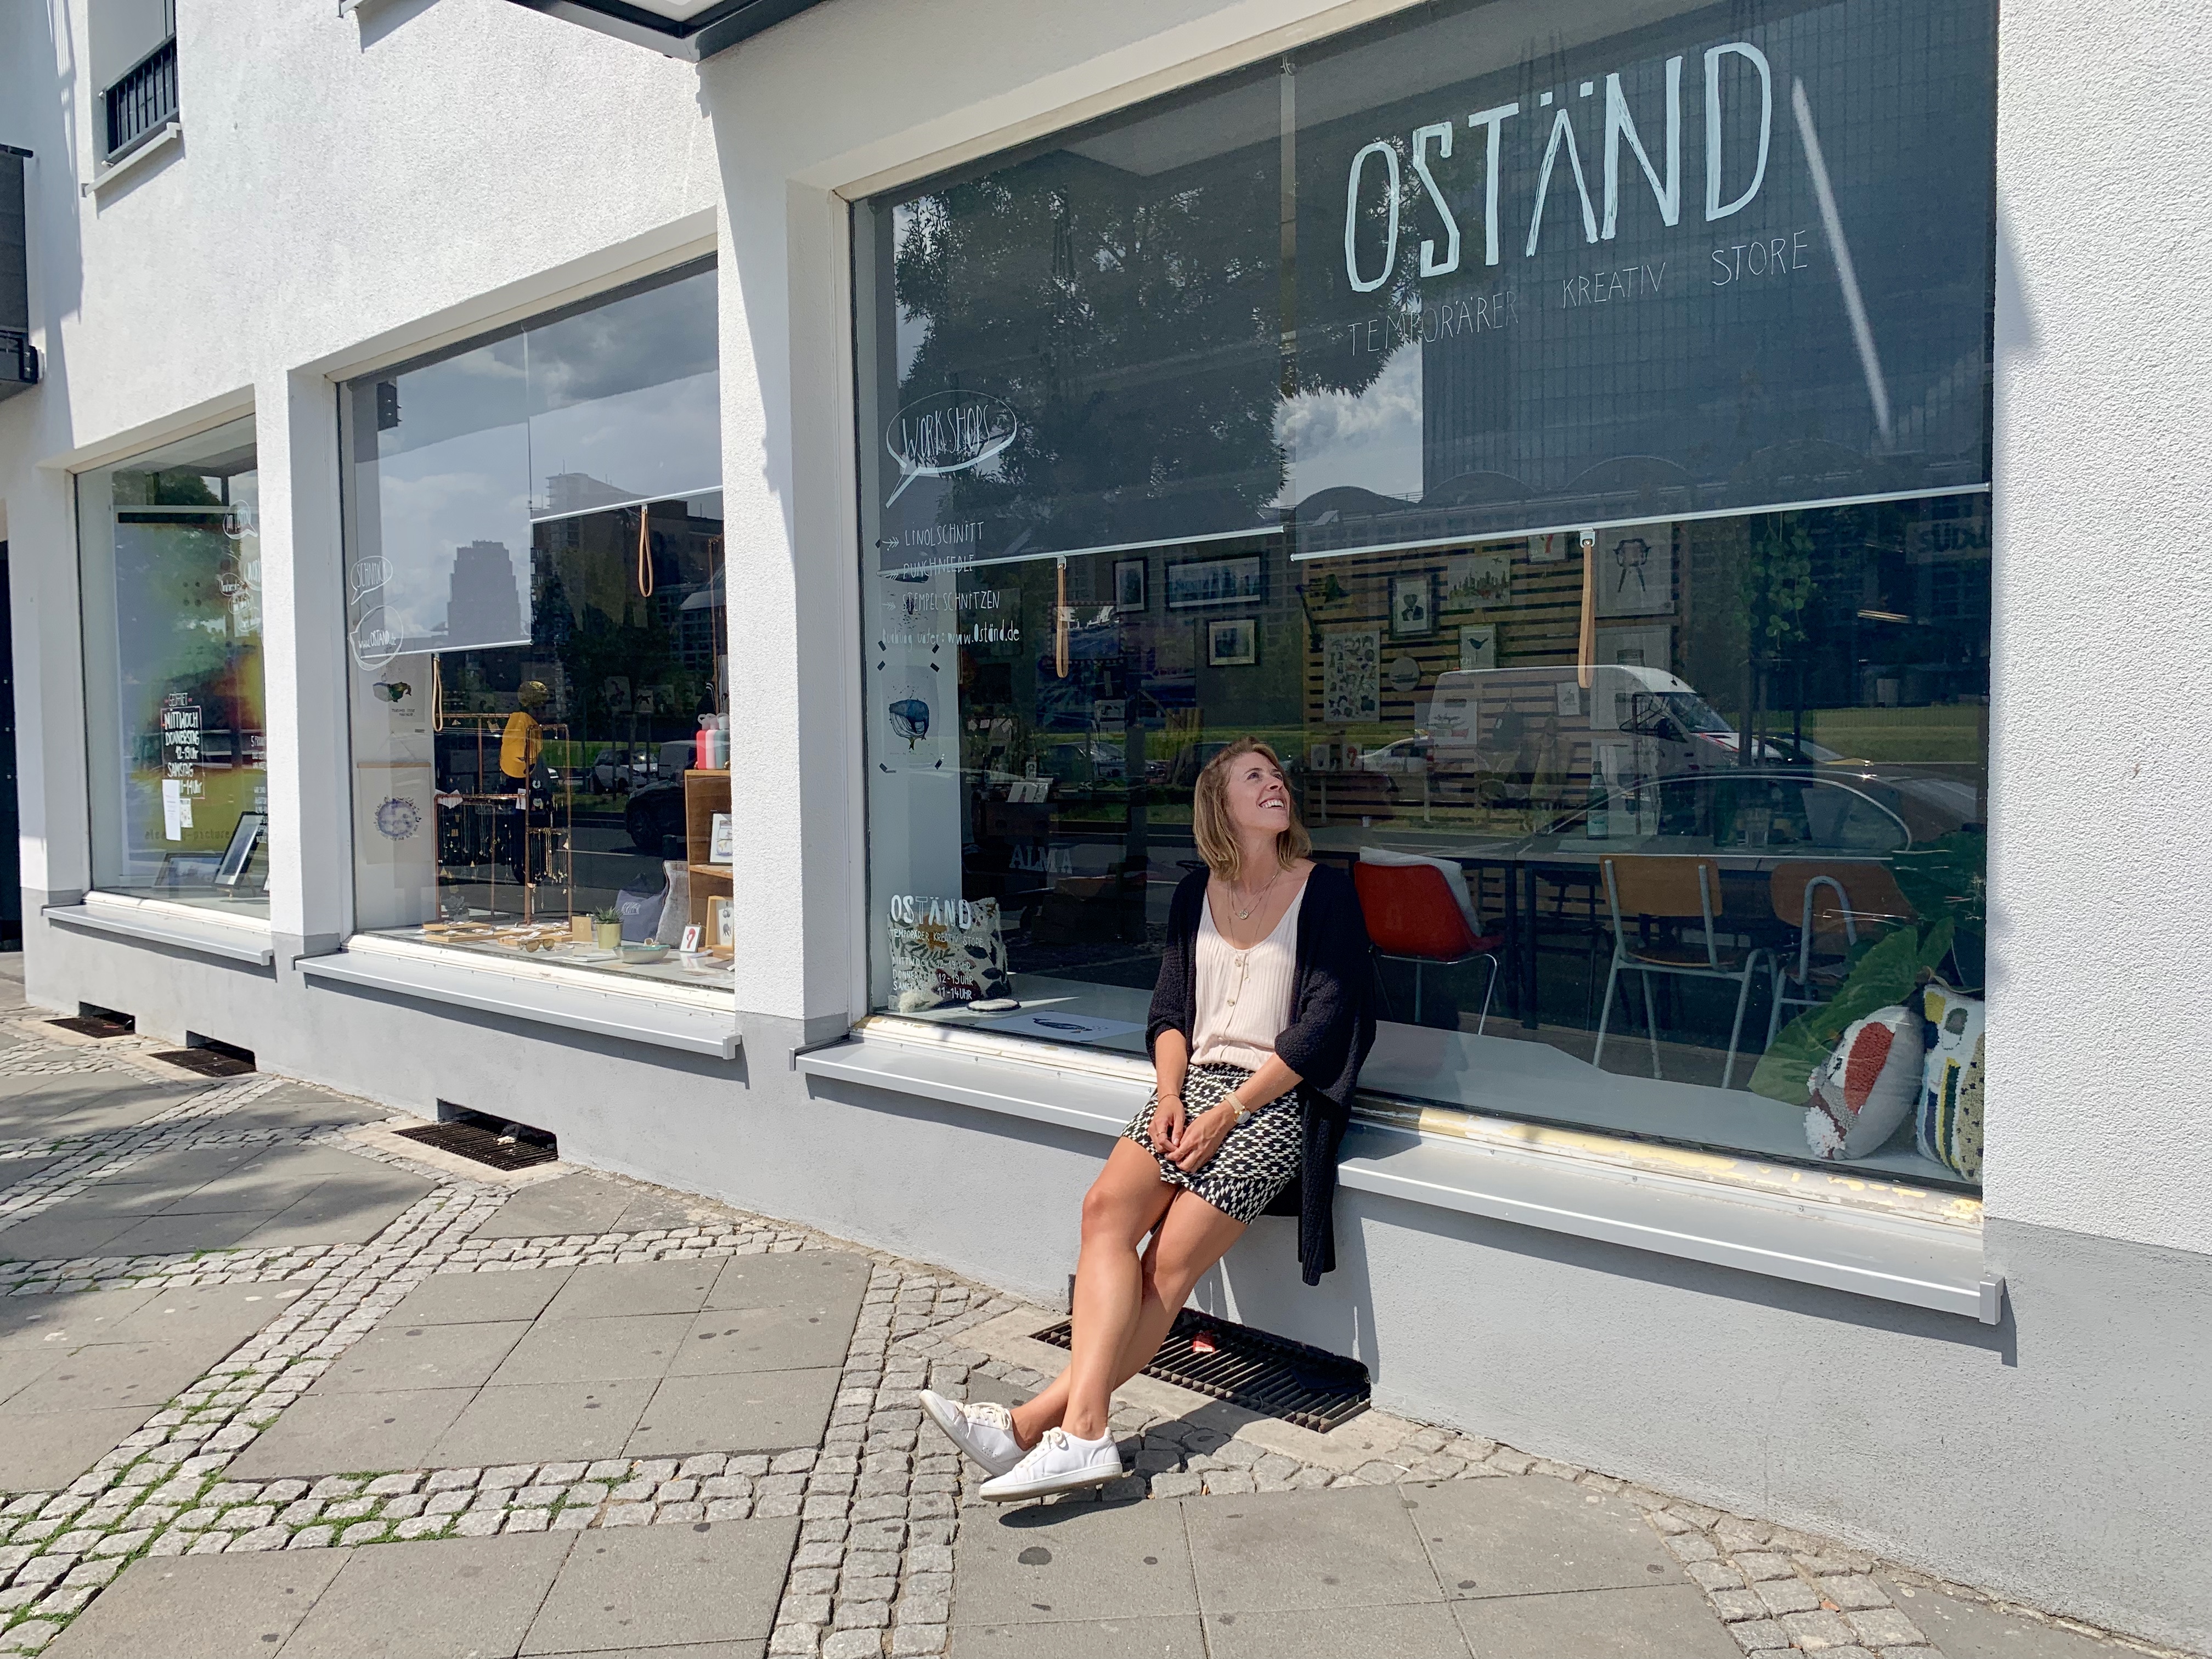 Kreatives Frankfurt: Ein Besuch im stylischen Oständ Store “Fränkfurt”